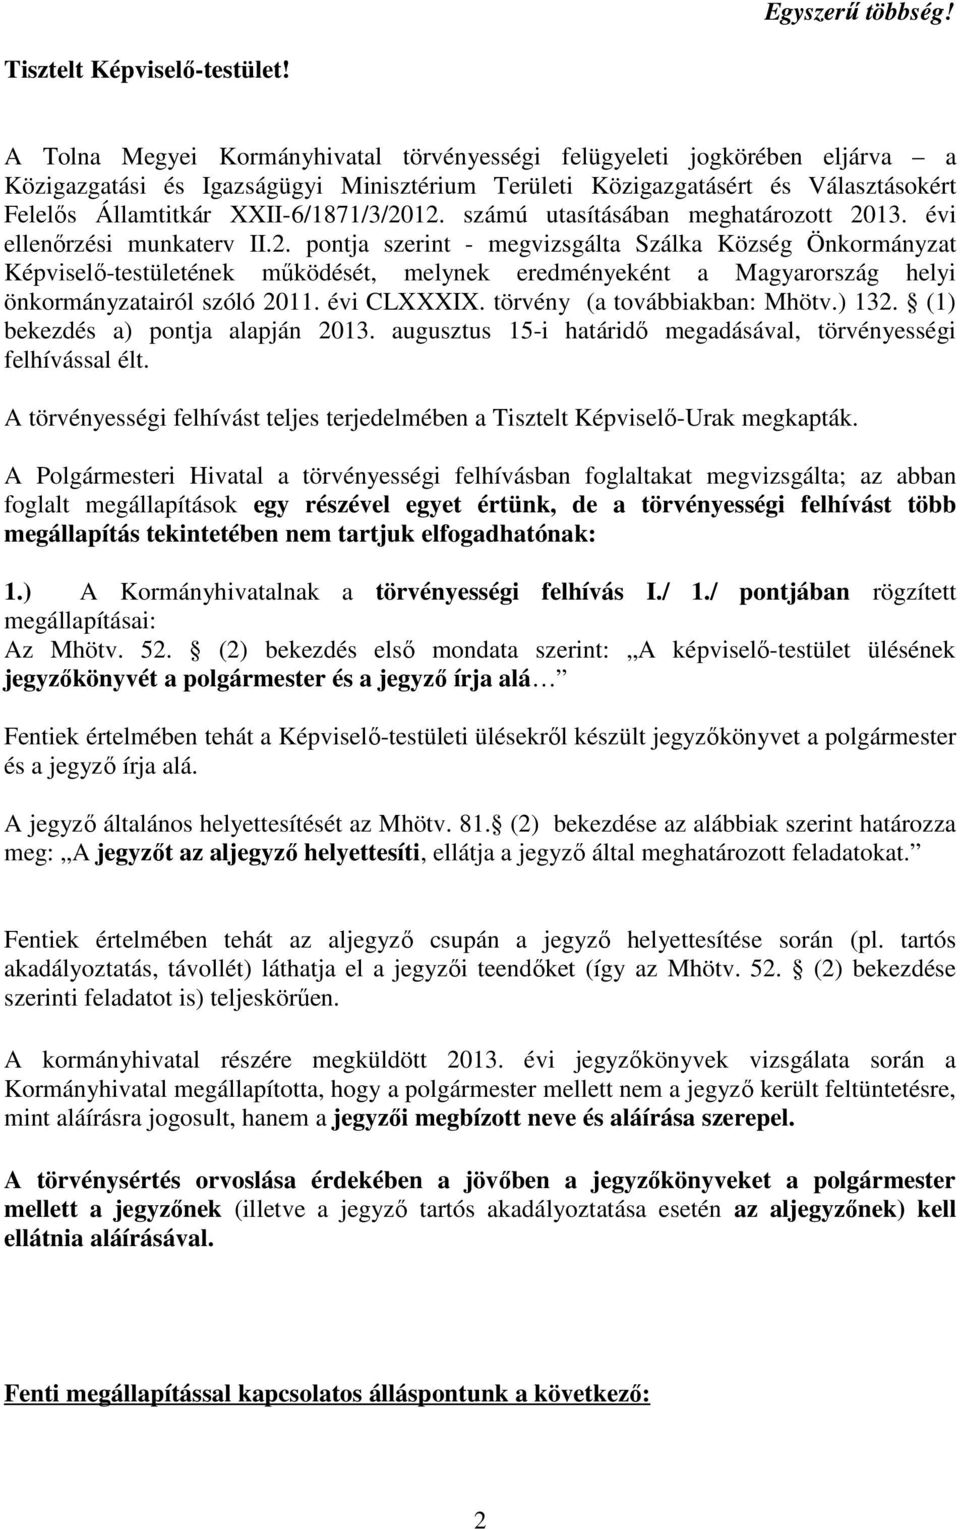 XXII-6/1871/3/2012. számú utasításában meghatározott 2013. évi ellenőrzési munkaterv II.2. pontja szerint - megvizsgálta Szálka Község Önkormányzat Képviselő-testületének működését, melynek eredményeként a Magyarország helyi önkormányzatairól szóló 2011.